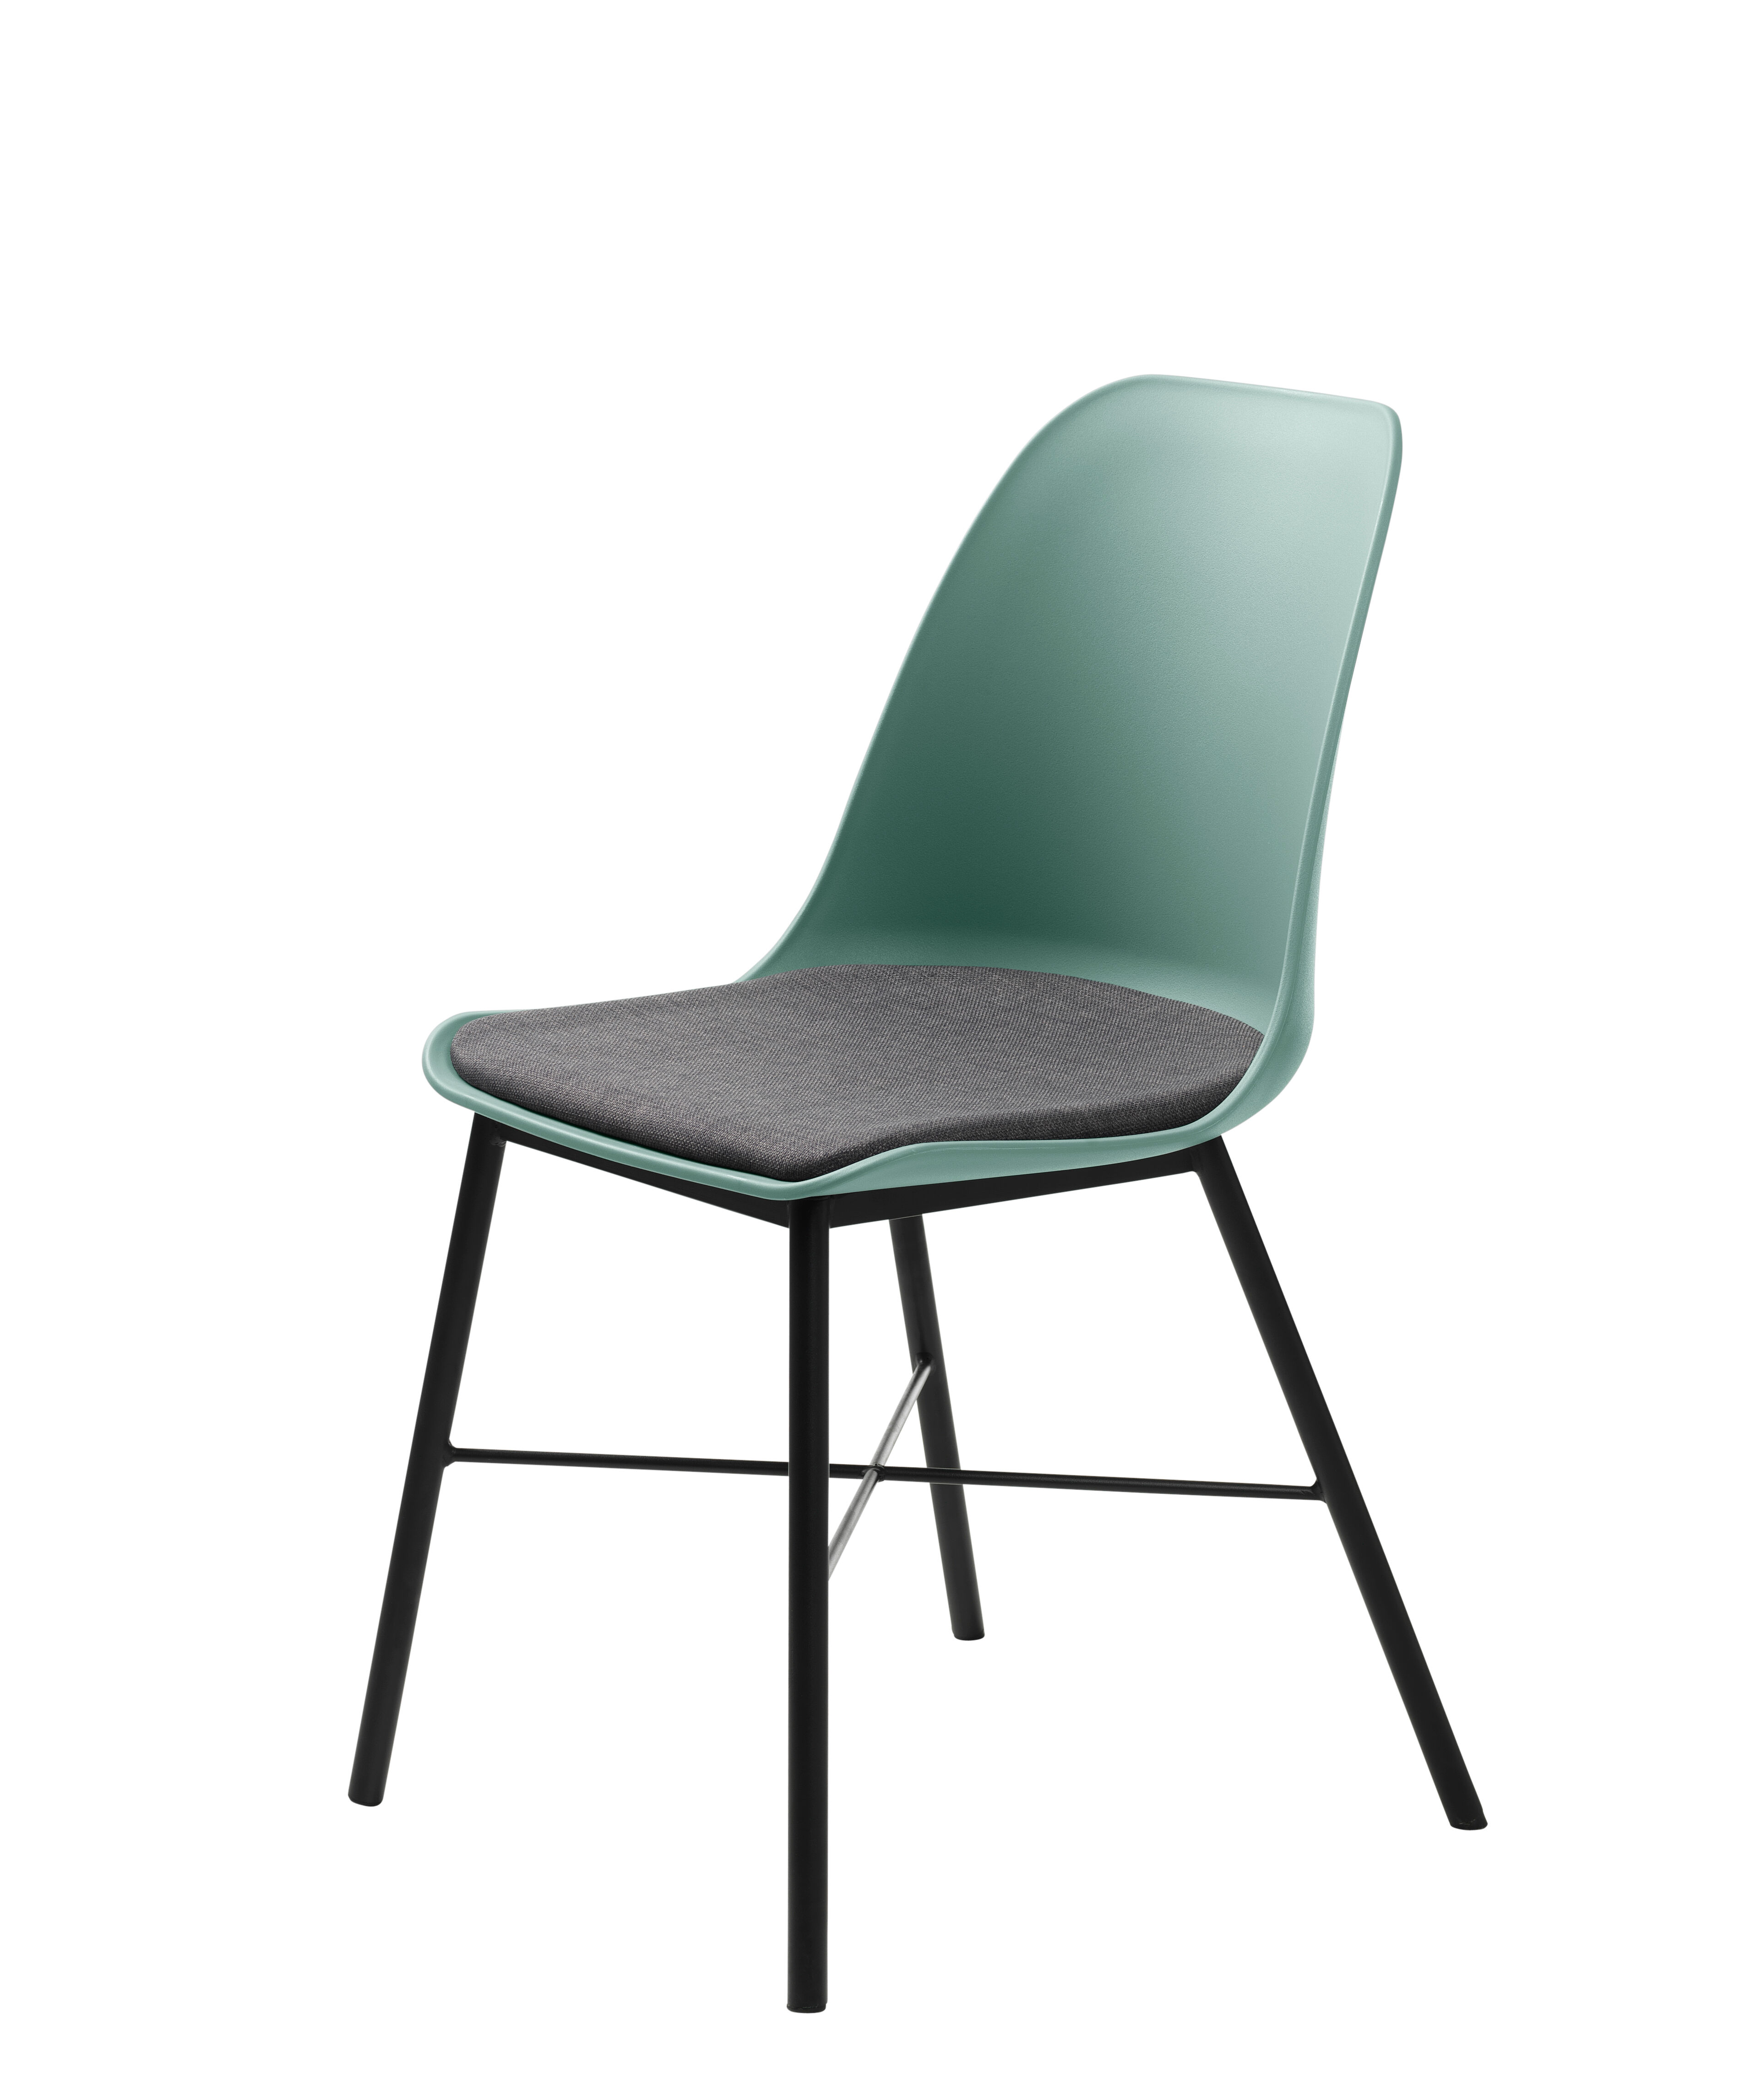 Whise spisestuesstol i støvet grønn og grå, stell i svart metall.